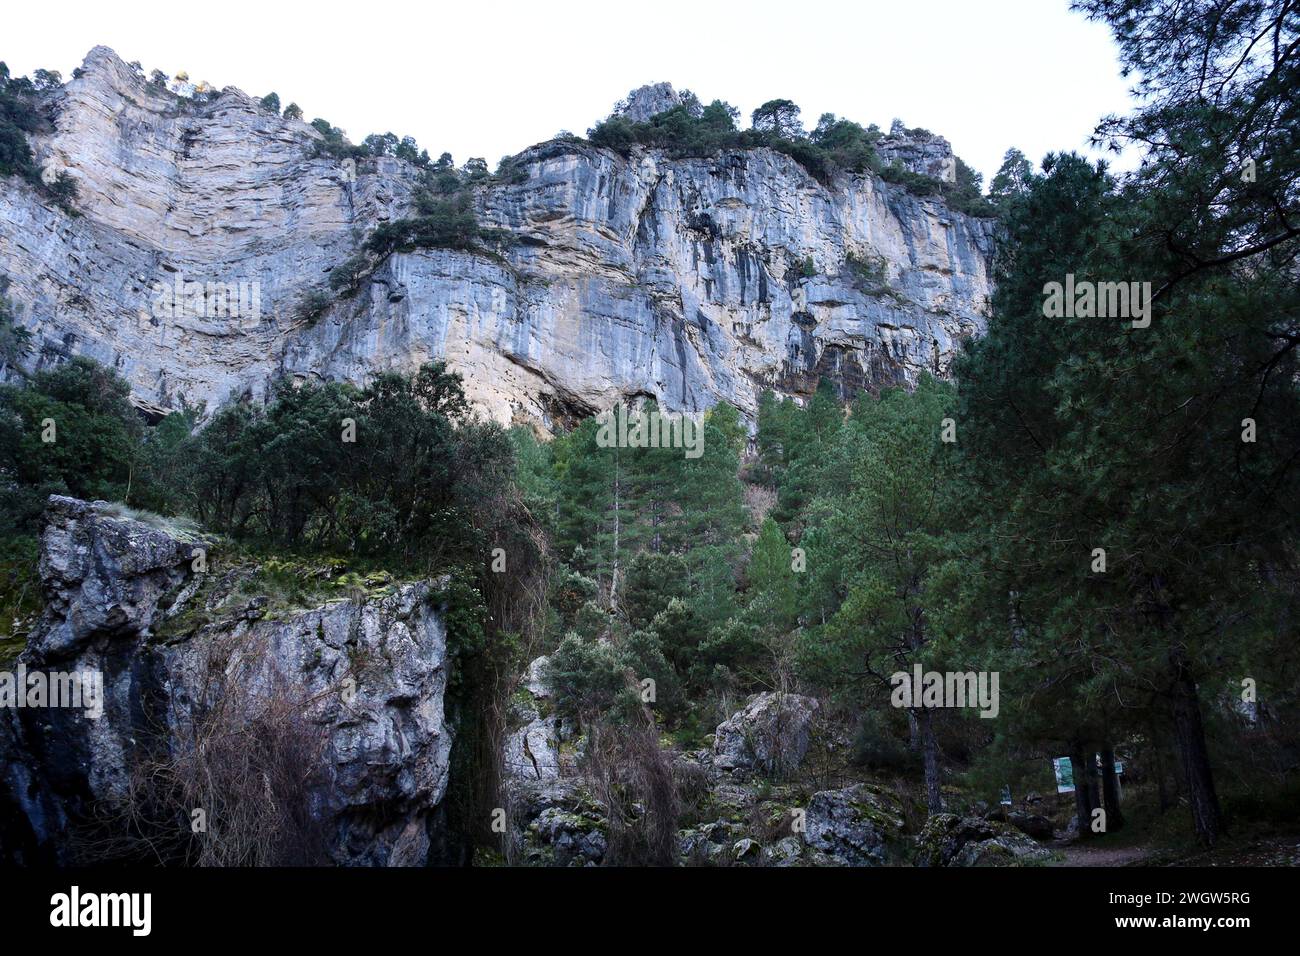 Beautiful landscape near the Nacimiento del Rio Mundo in Albacete province, Spain Stock Photo